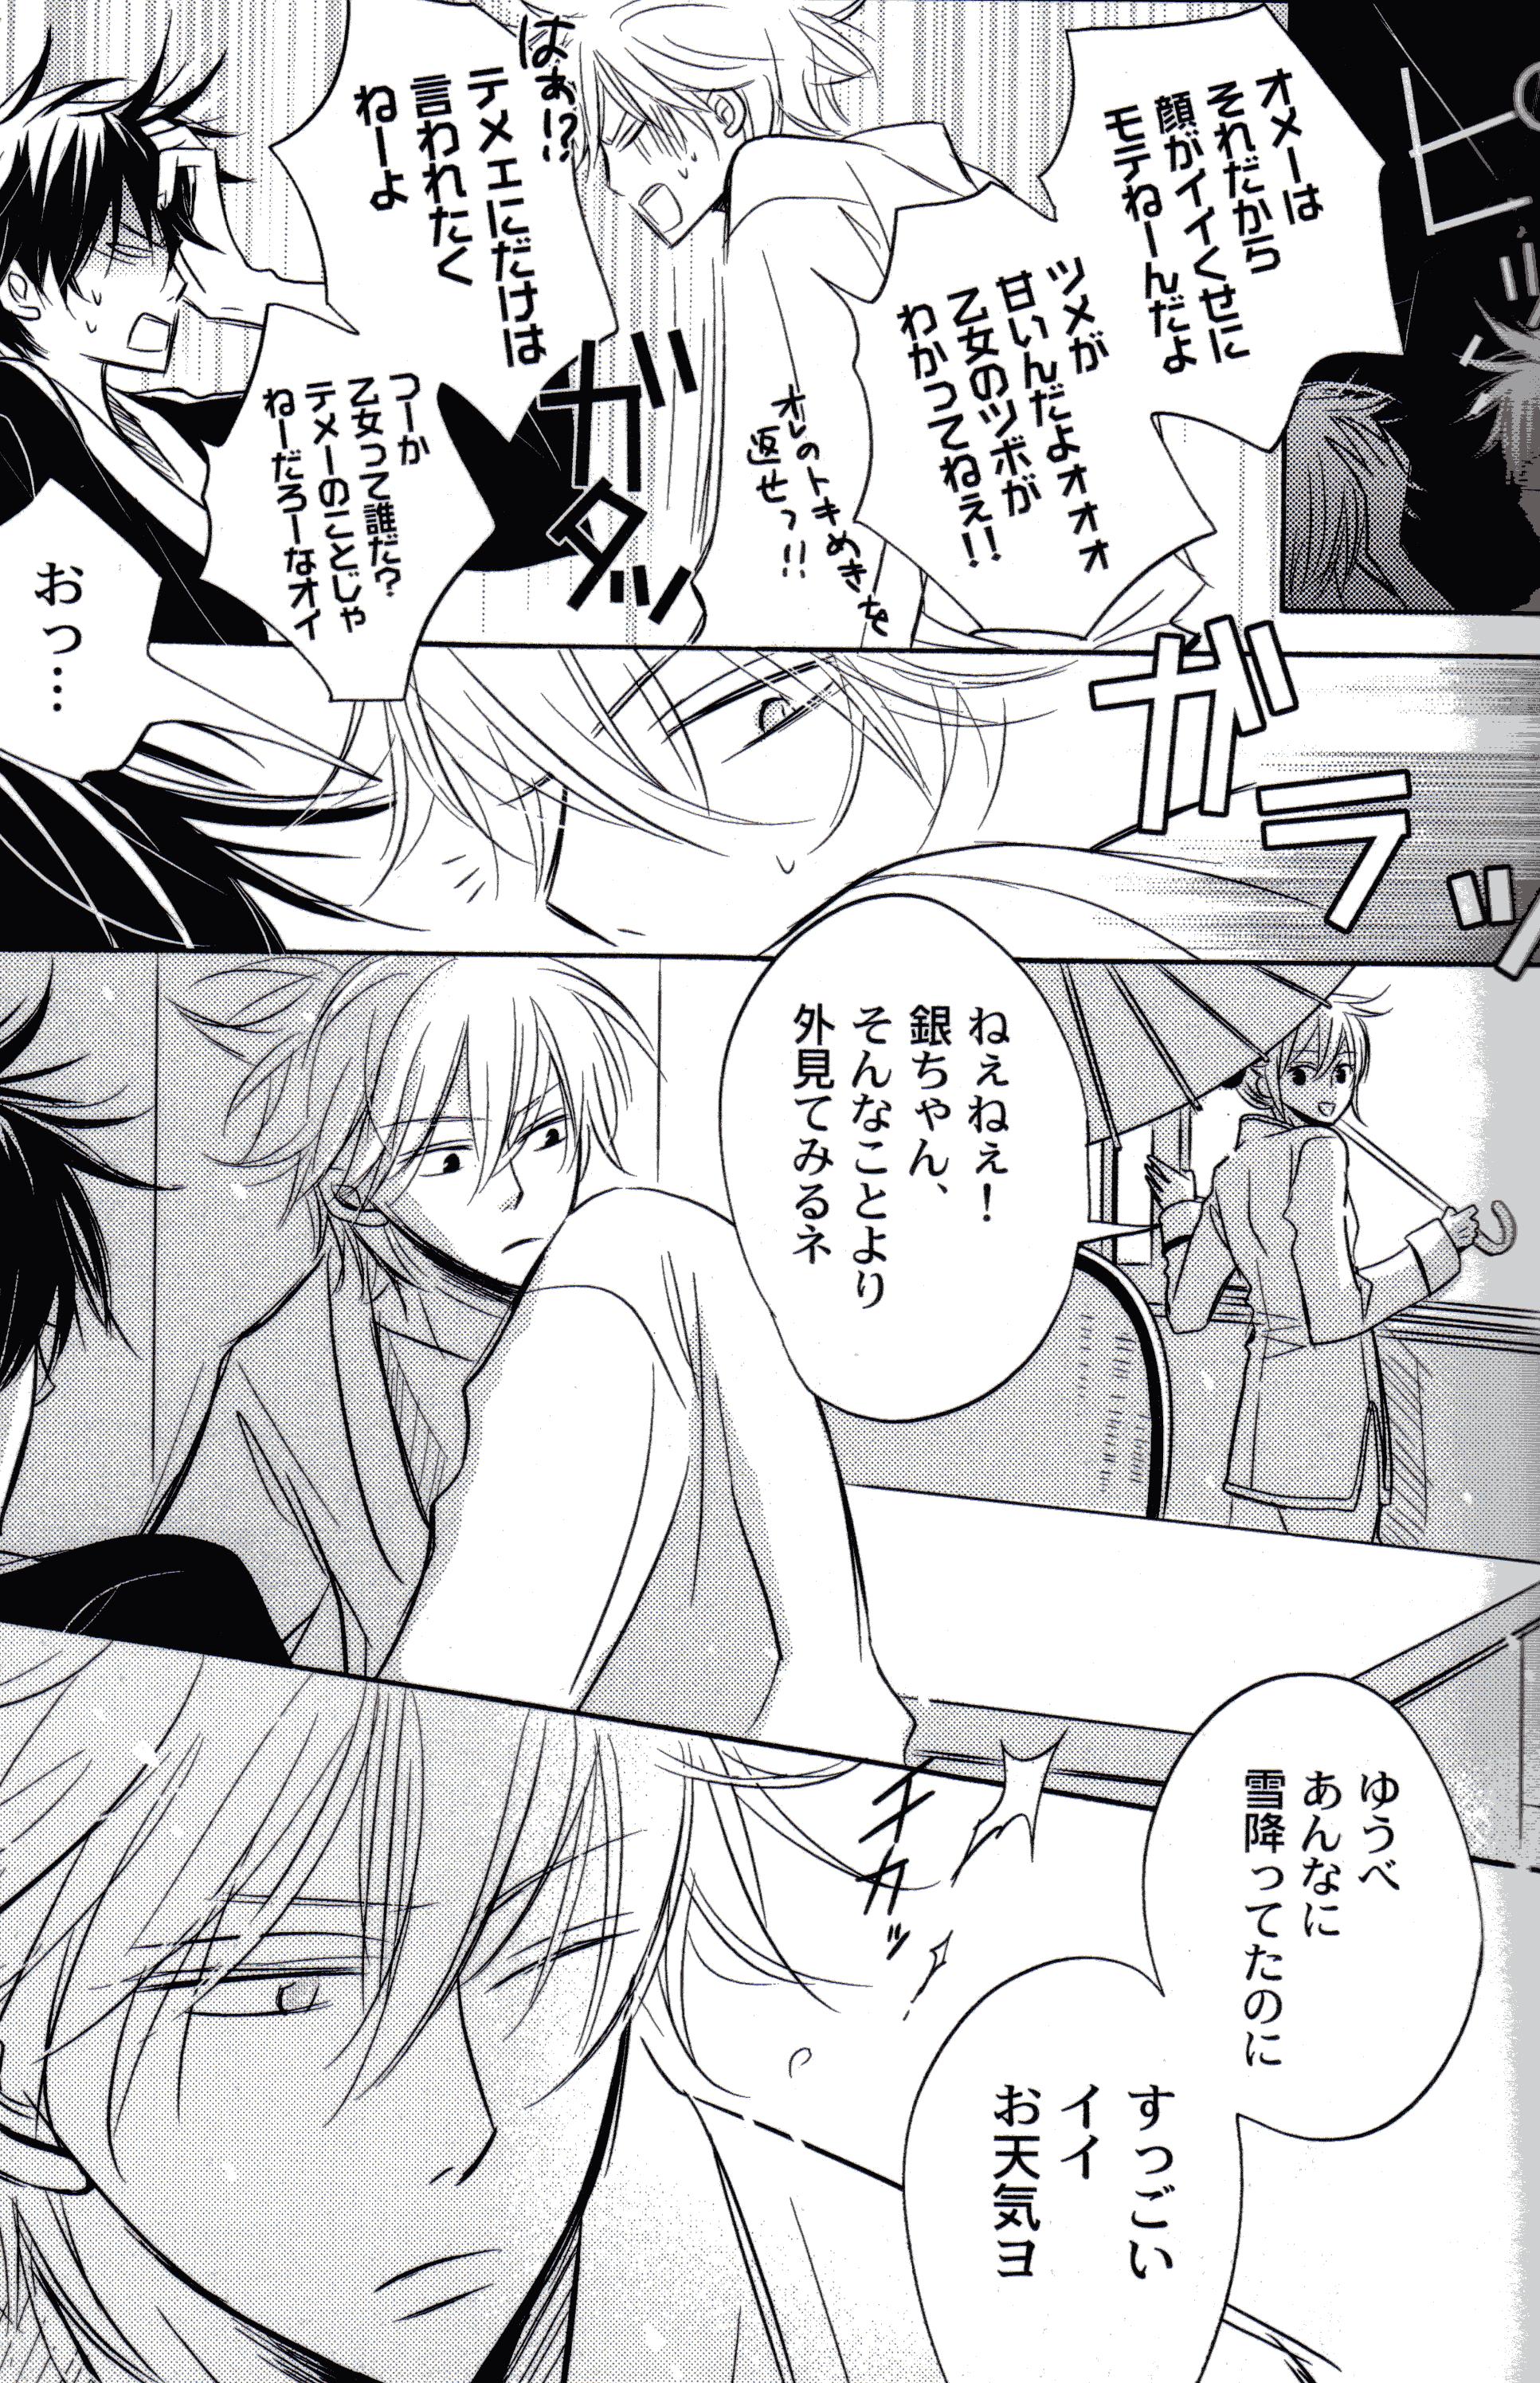 Perverted FOUR SEASONS 2 - Gintama Bunduda - Page 14